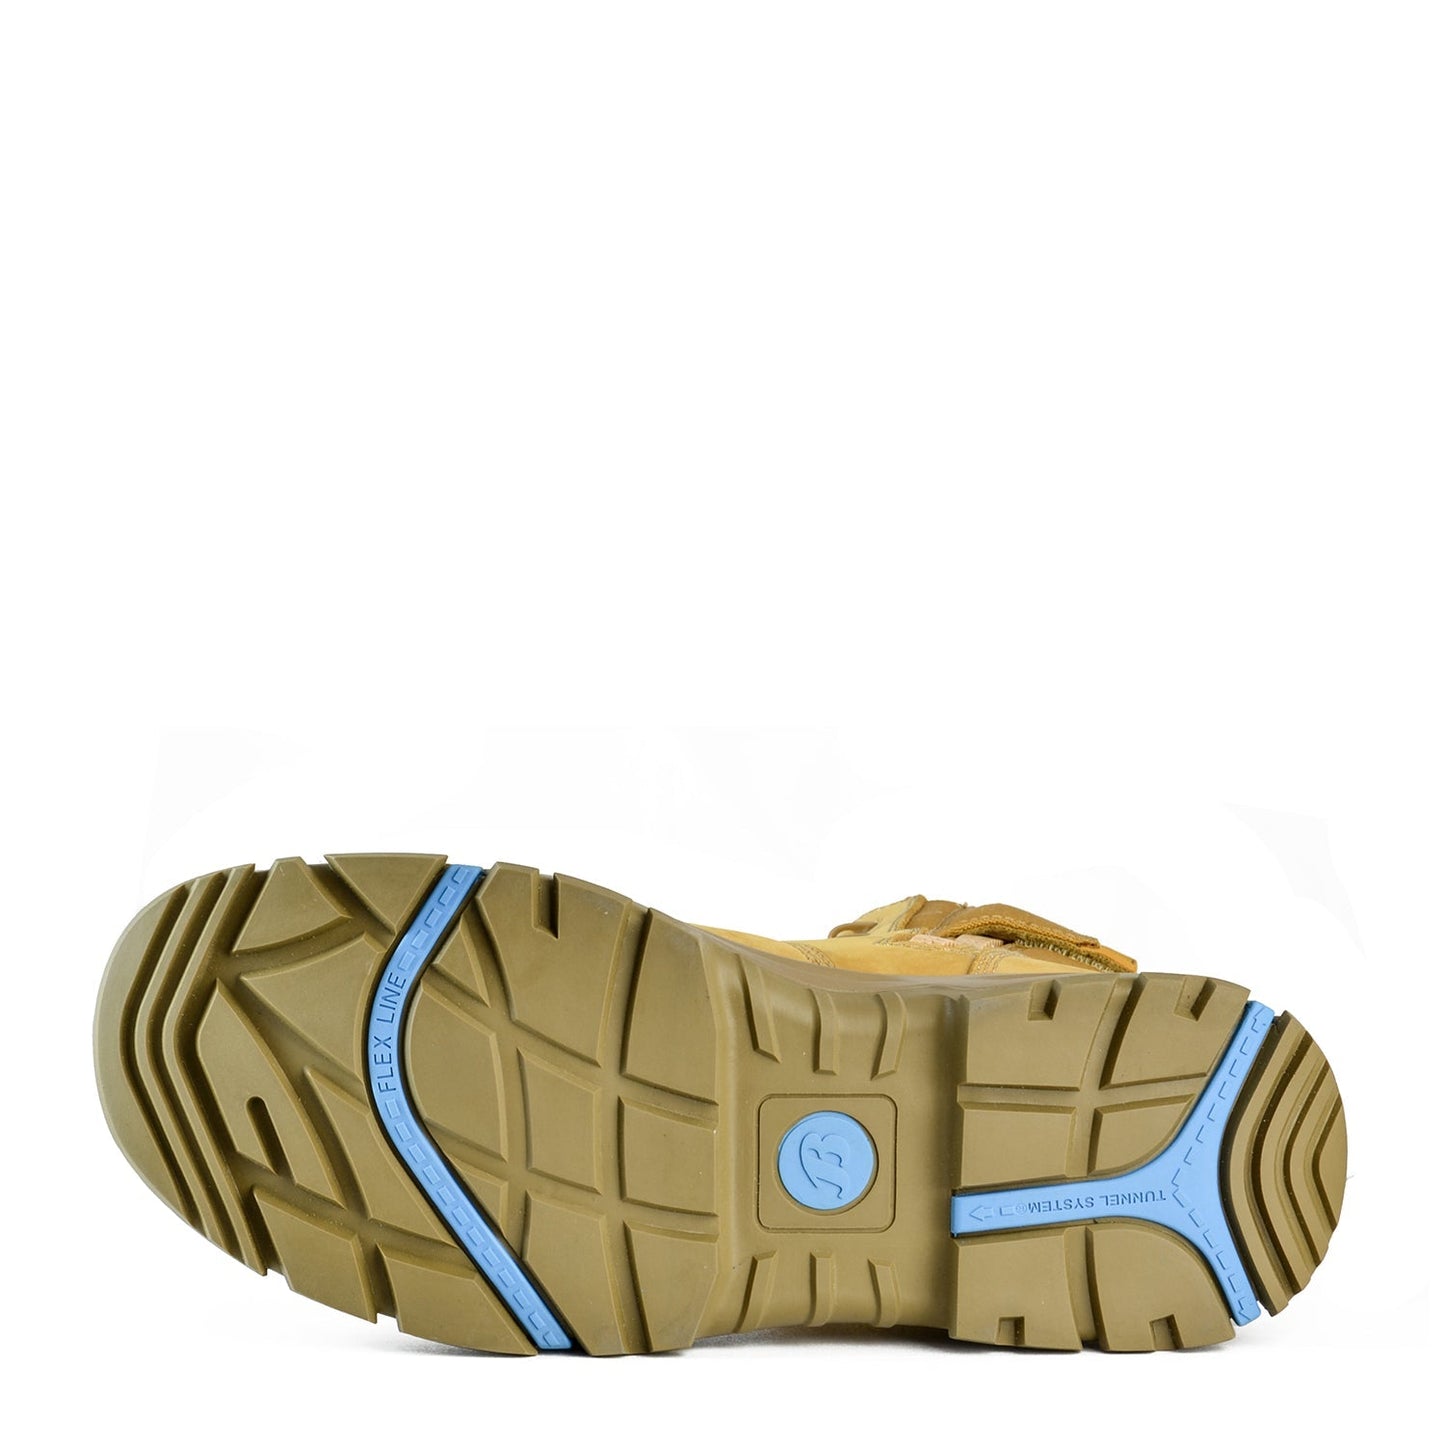 Bata 804-87047 Low Leg Wheat Bazza Boot blue-heeler-boots